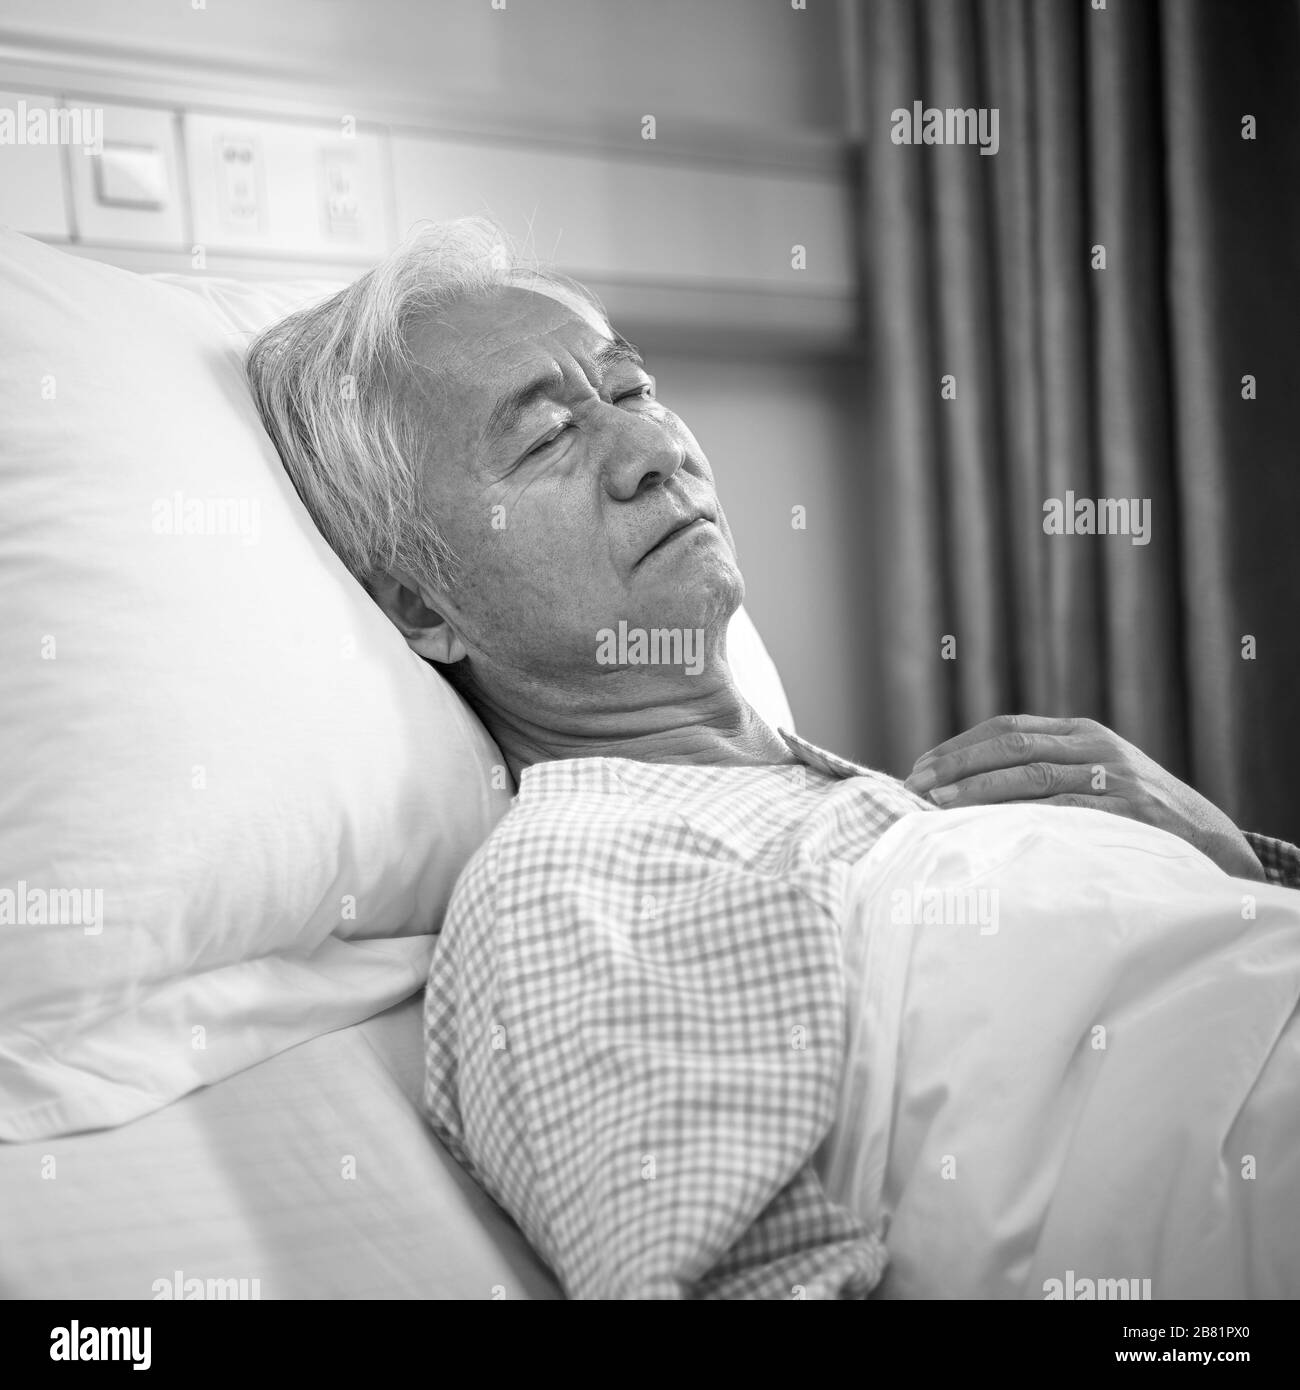 pazienti anziani asiatici di sesso maschile sdraiati a letto in reparto ospedaliero o in strutture di vita assistite, in bianco e nero Foto Stock